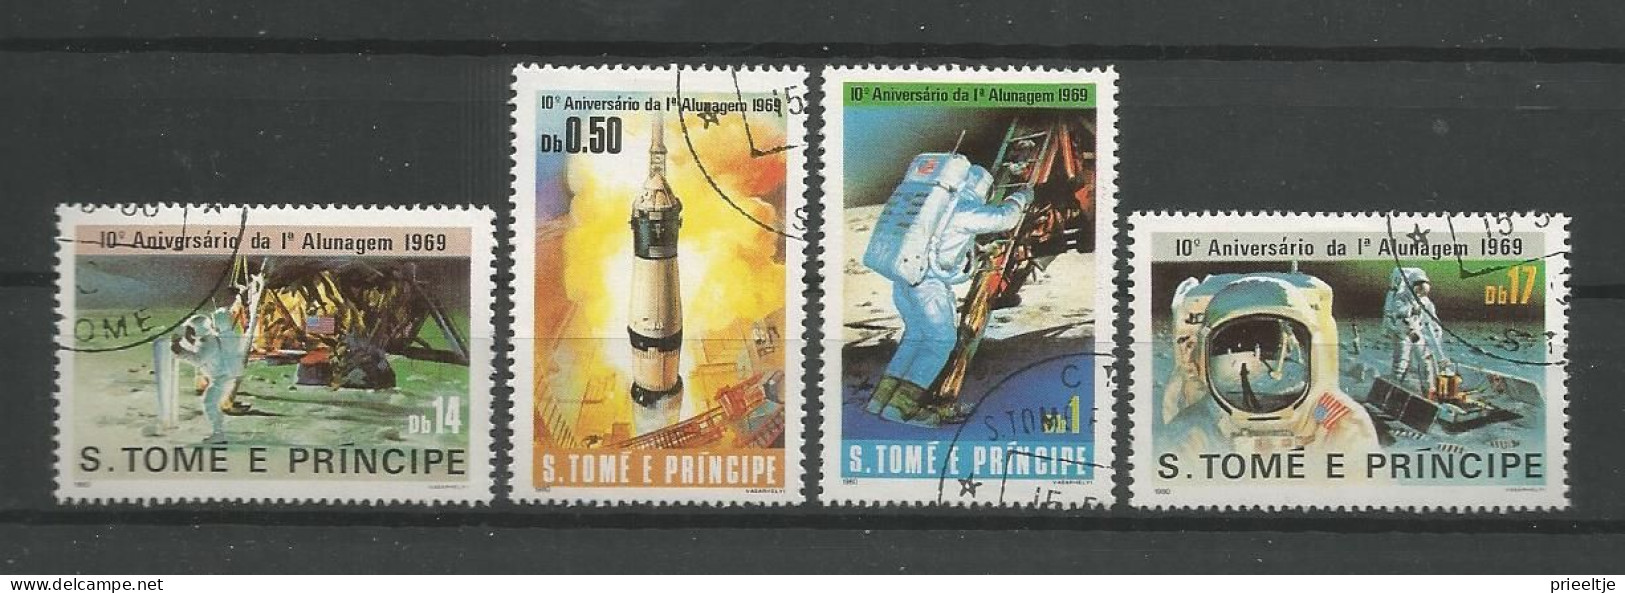 St Tome E Principe 1980 Space 10th Anniv. 1st Man On The Moon  Y.T. 594/597 (0) - Sao Tome Et Principe